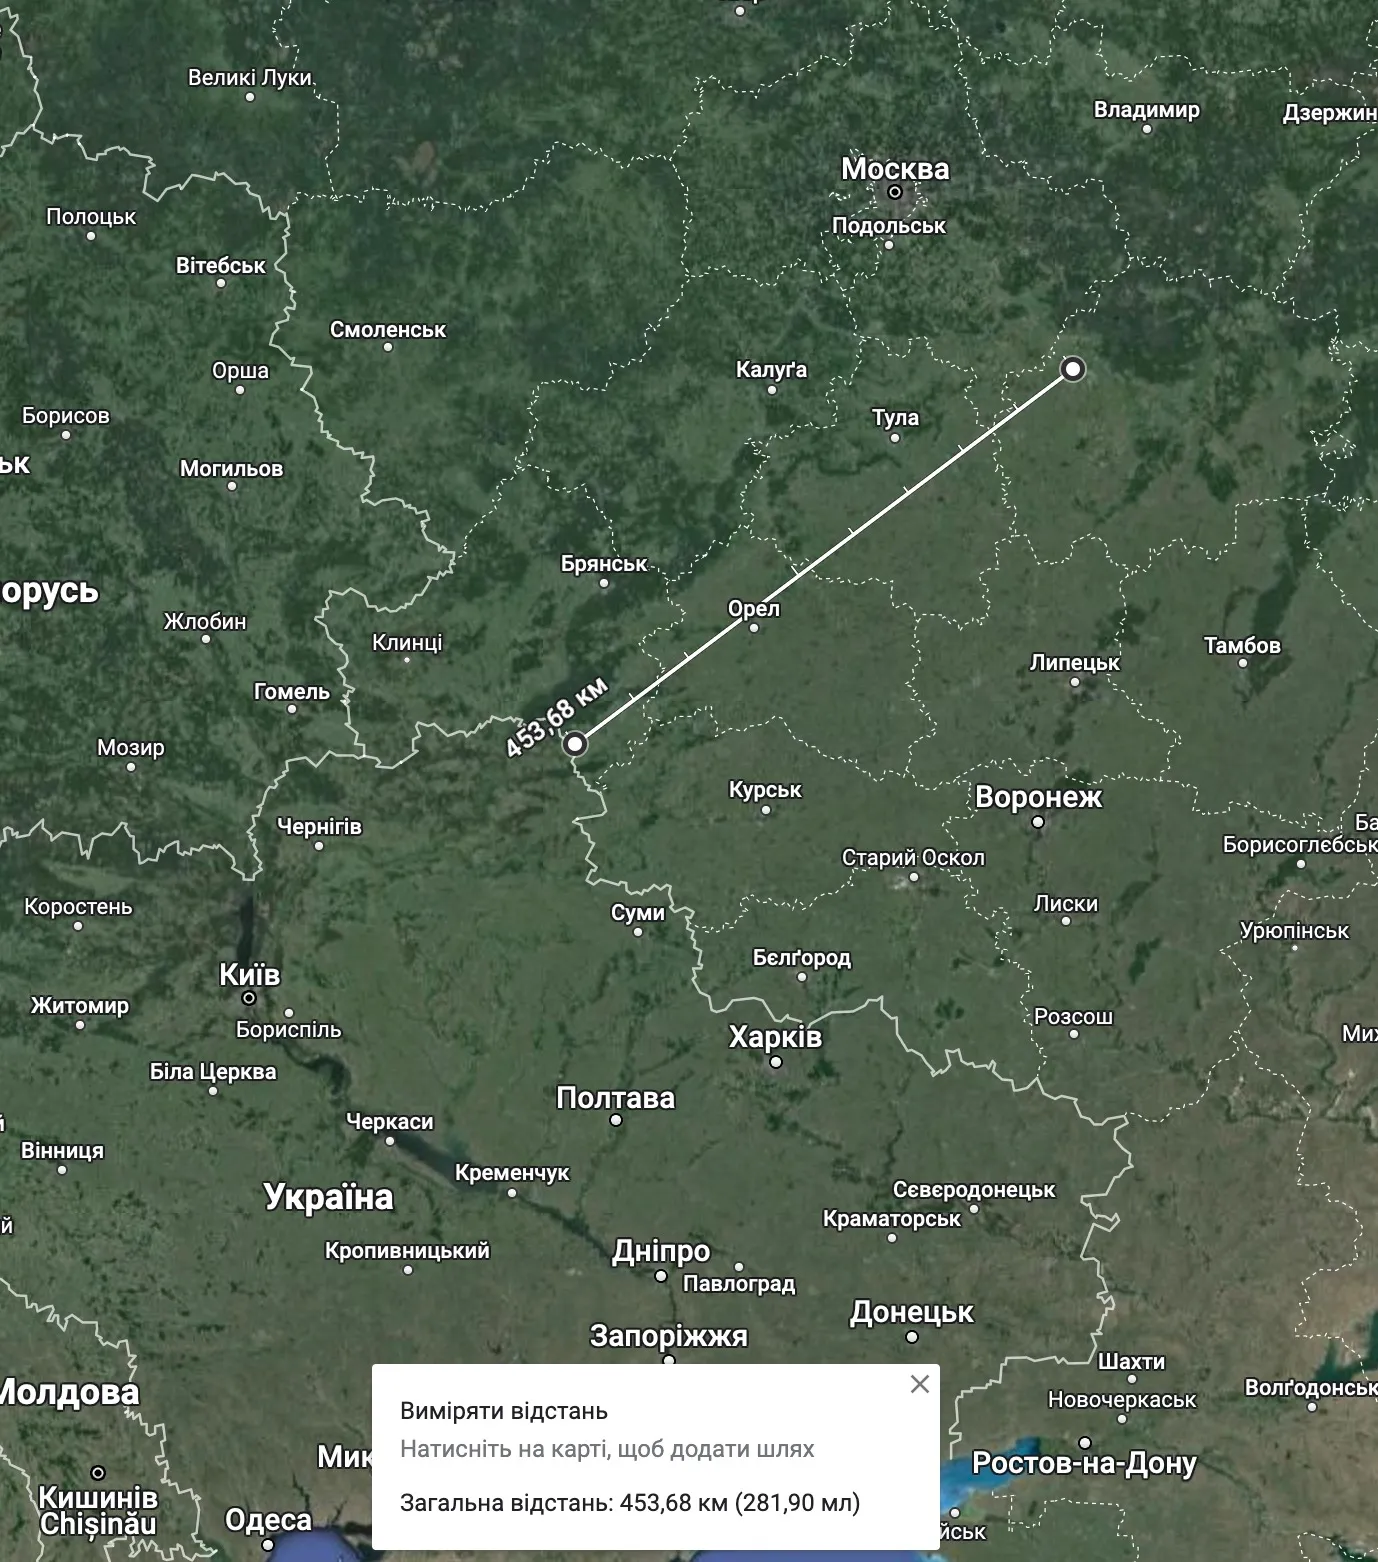 Відстань від українського кордону до Дягілєво